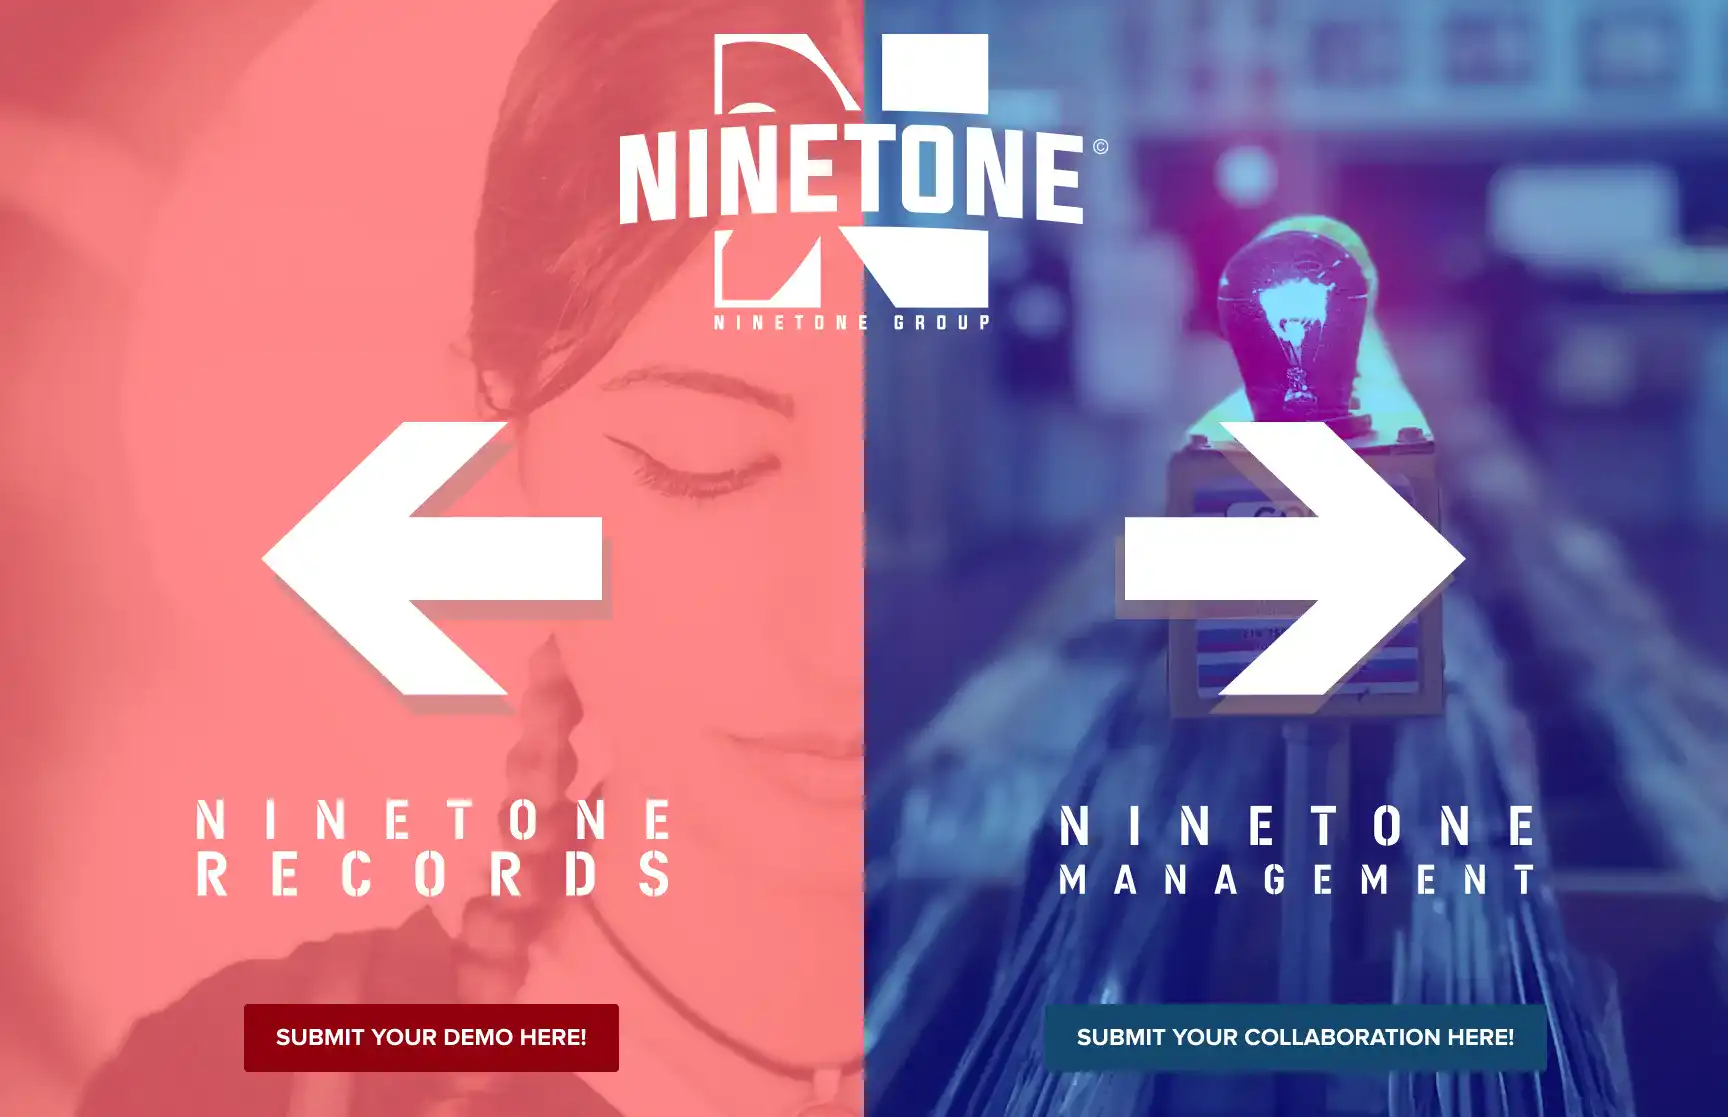 (c) Ninetone.com